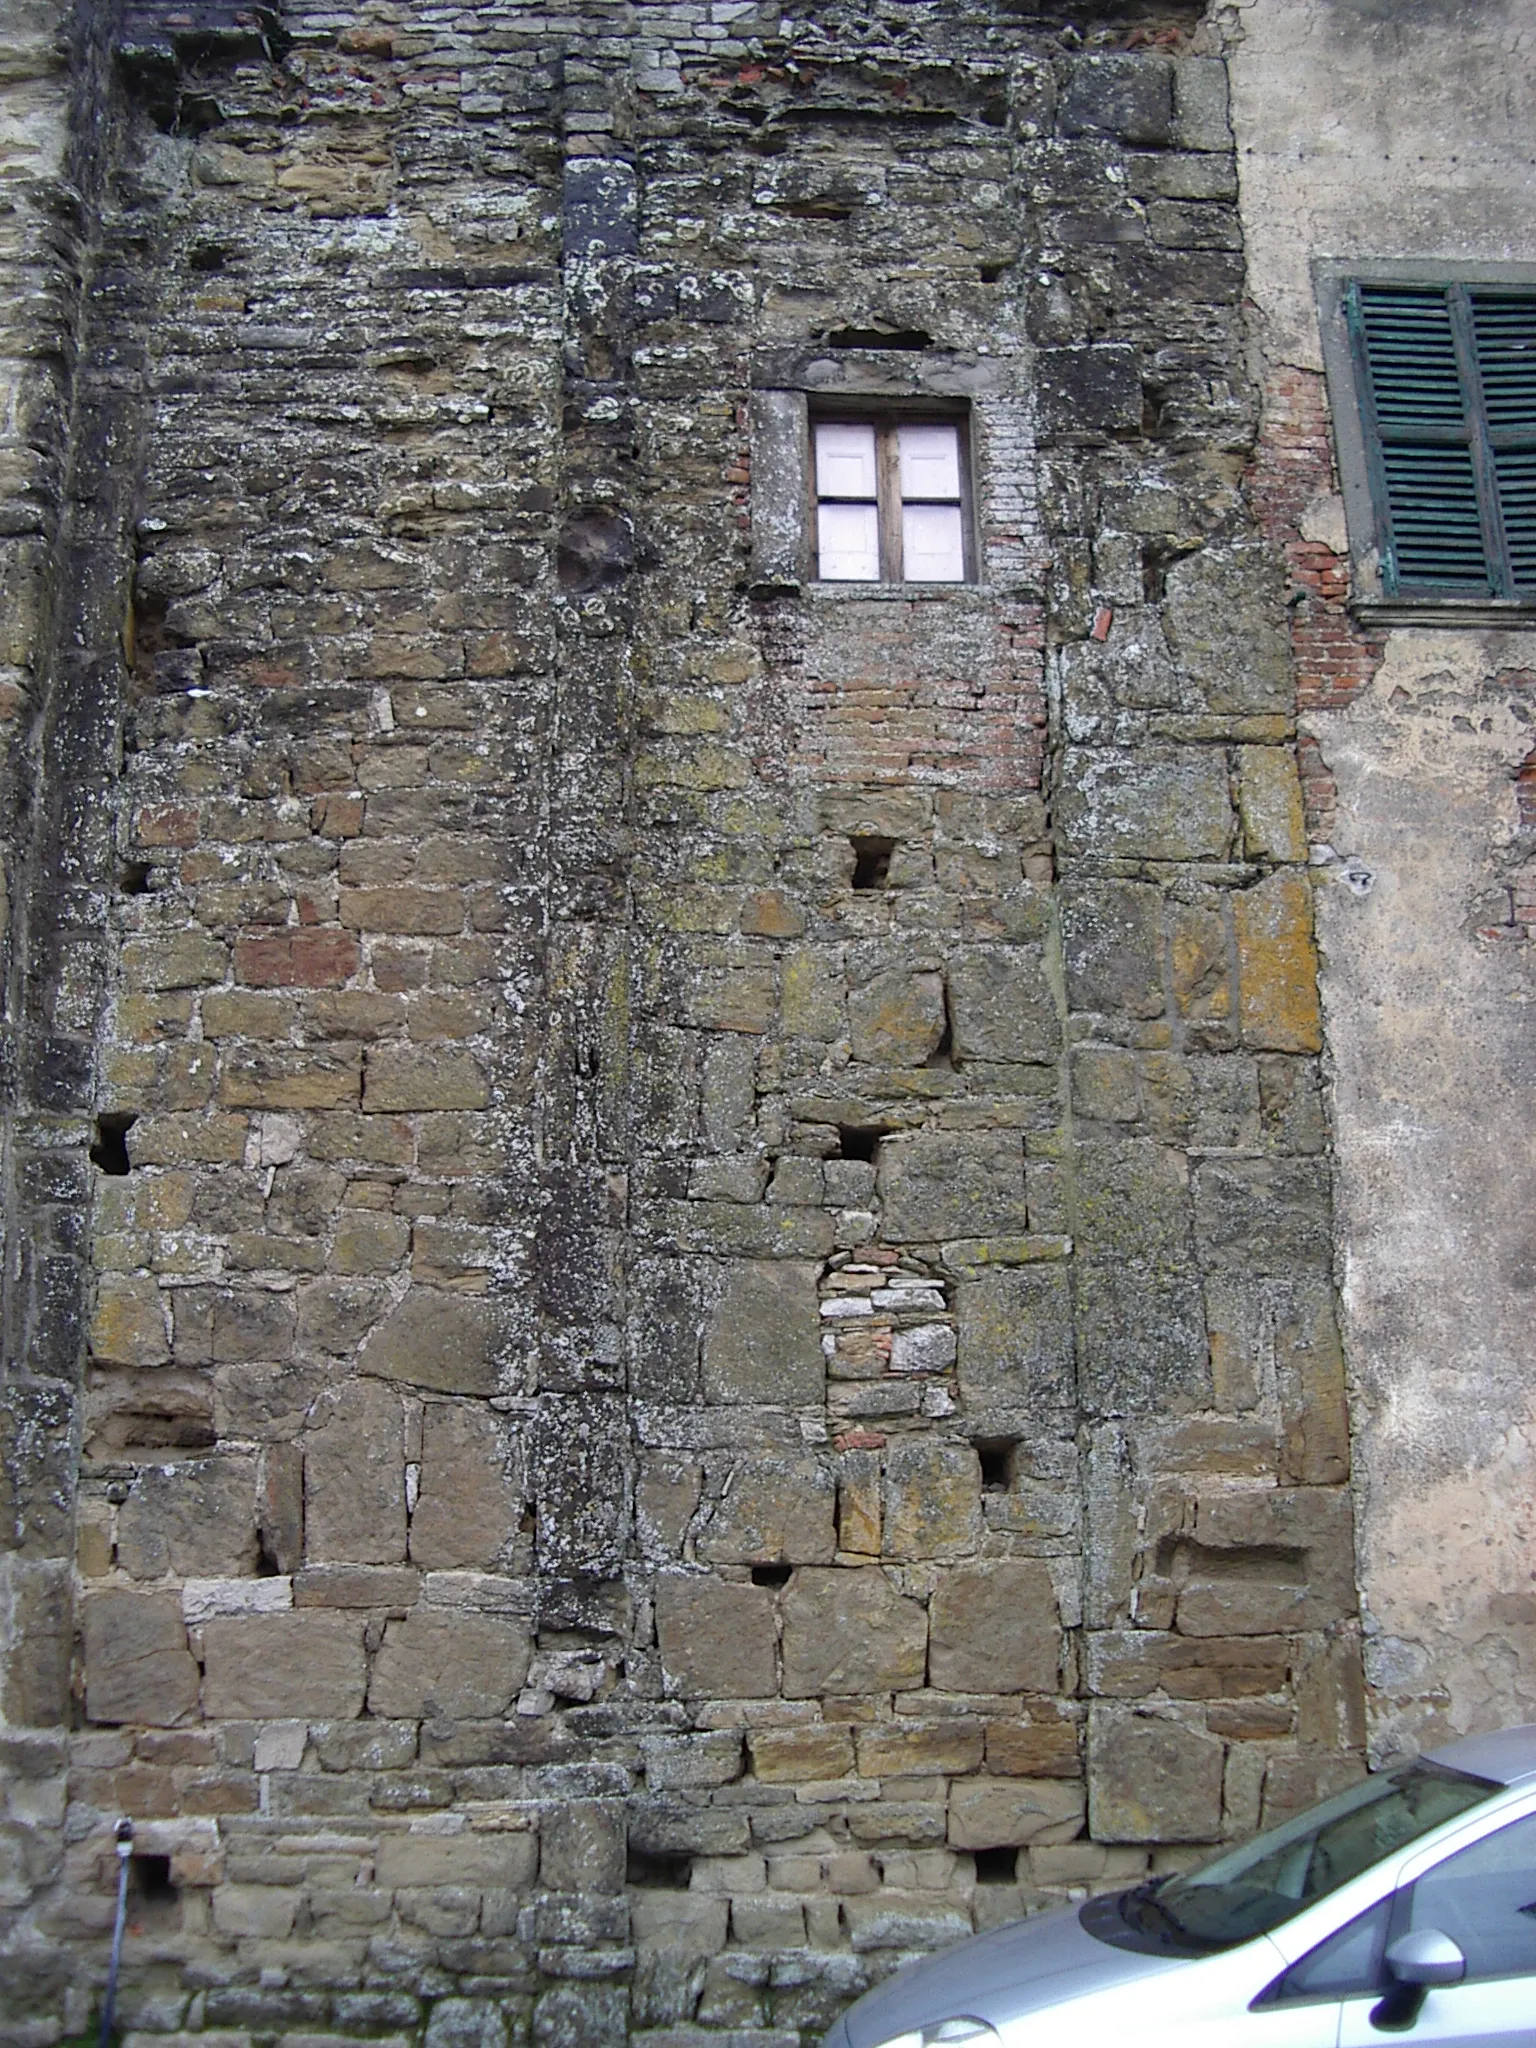 Photo showing: Badia Petroia è una frazione del comune di Città di Castello (PG).
Resti del monastero e della chiesa in stato di degrado architettonico e strutturale